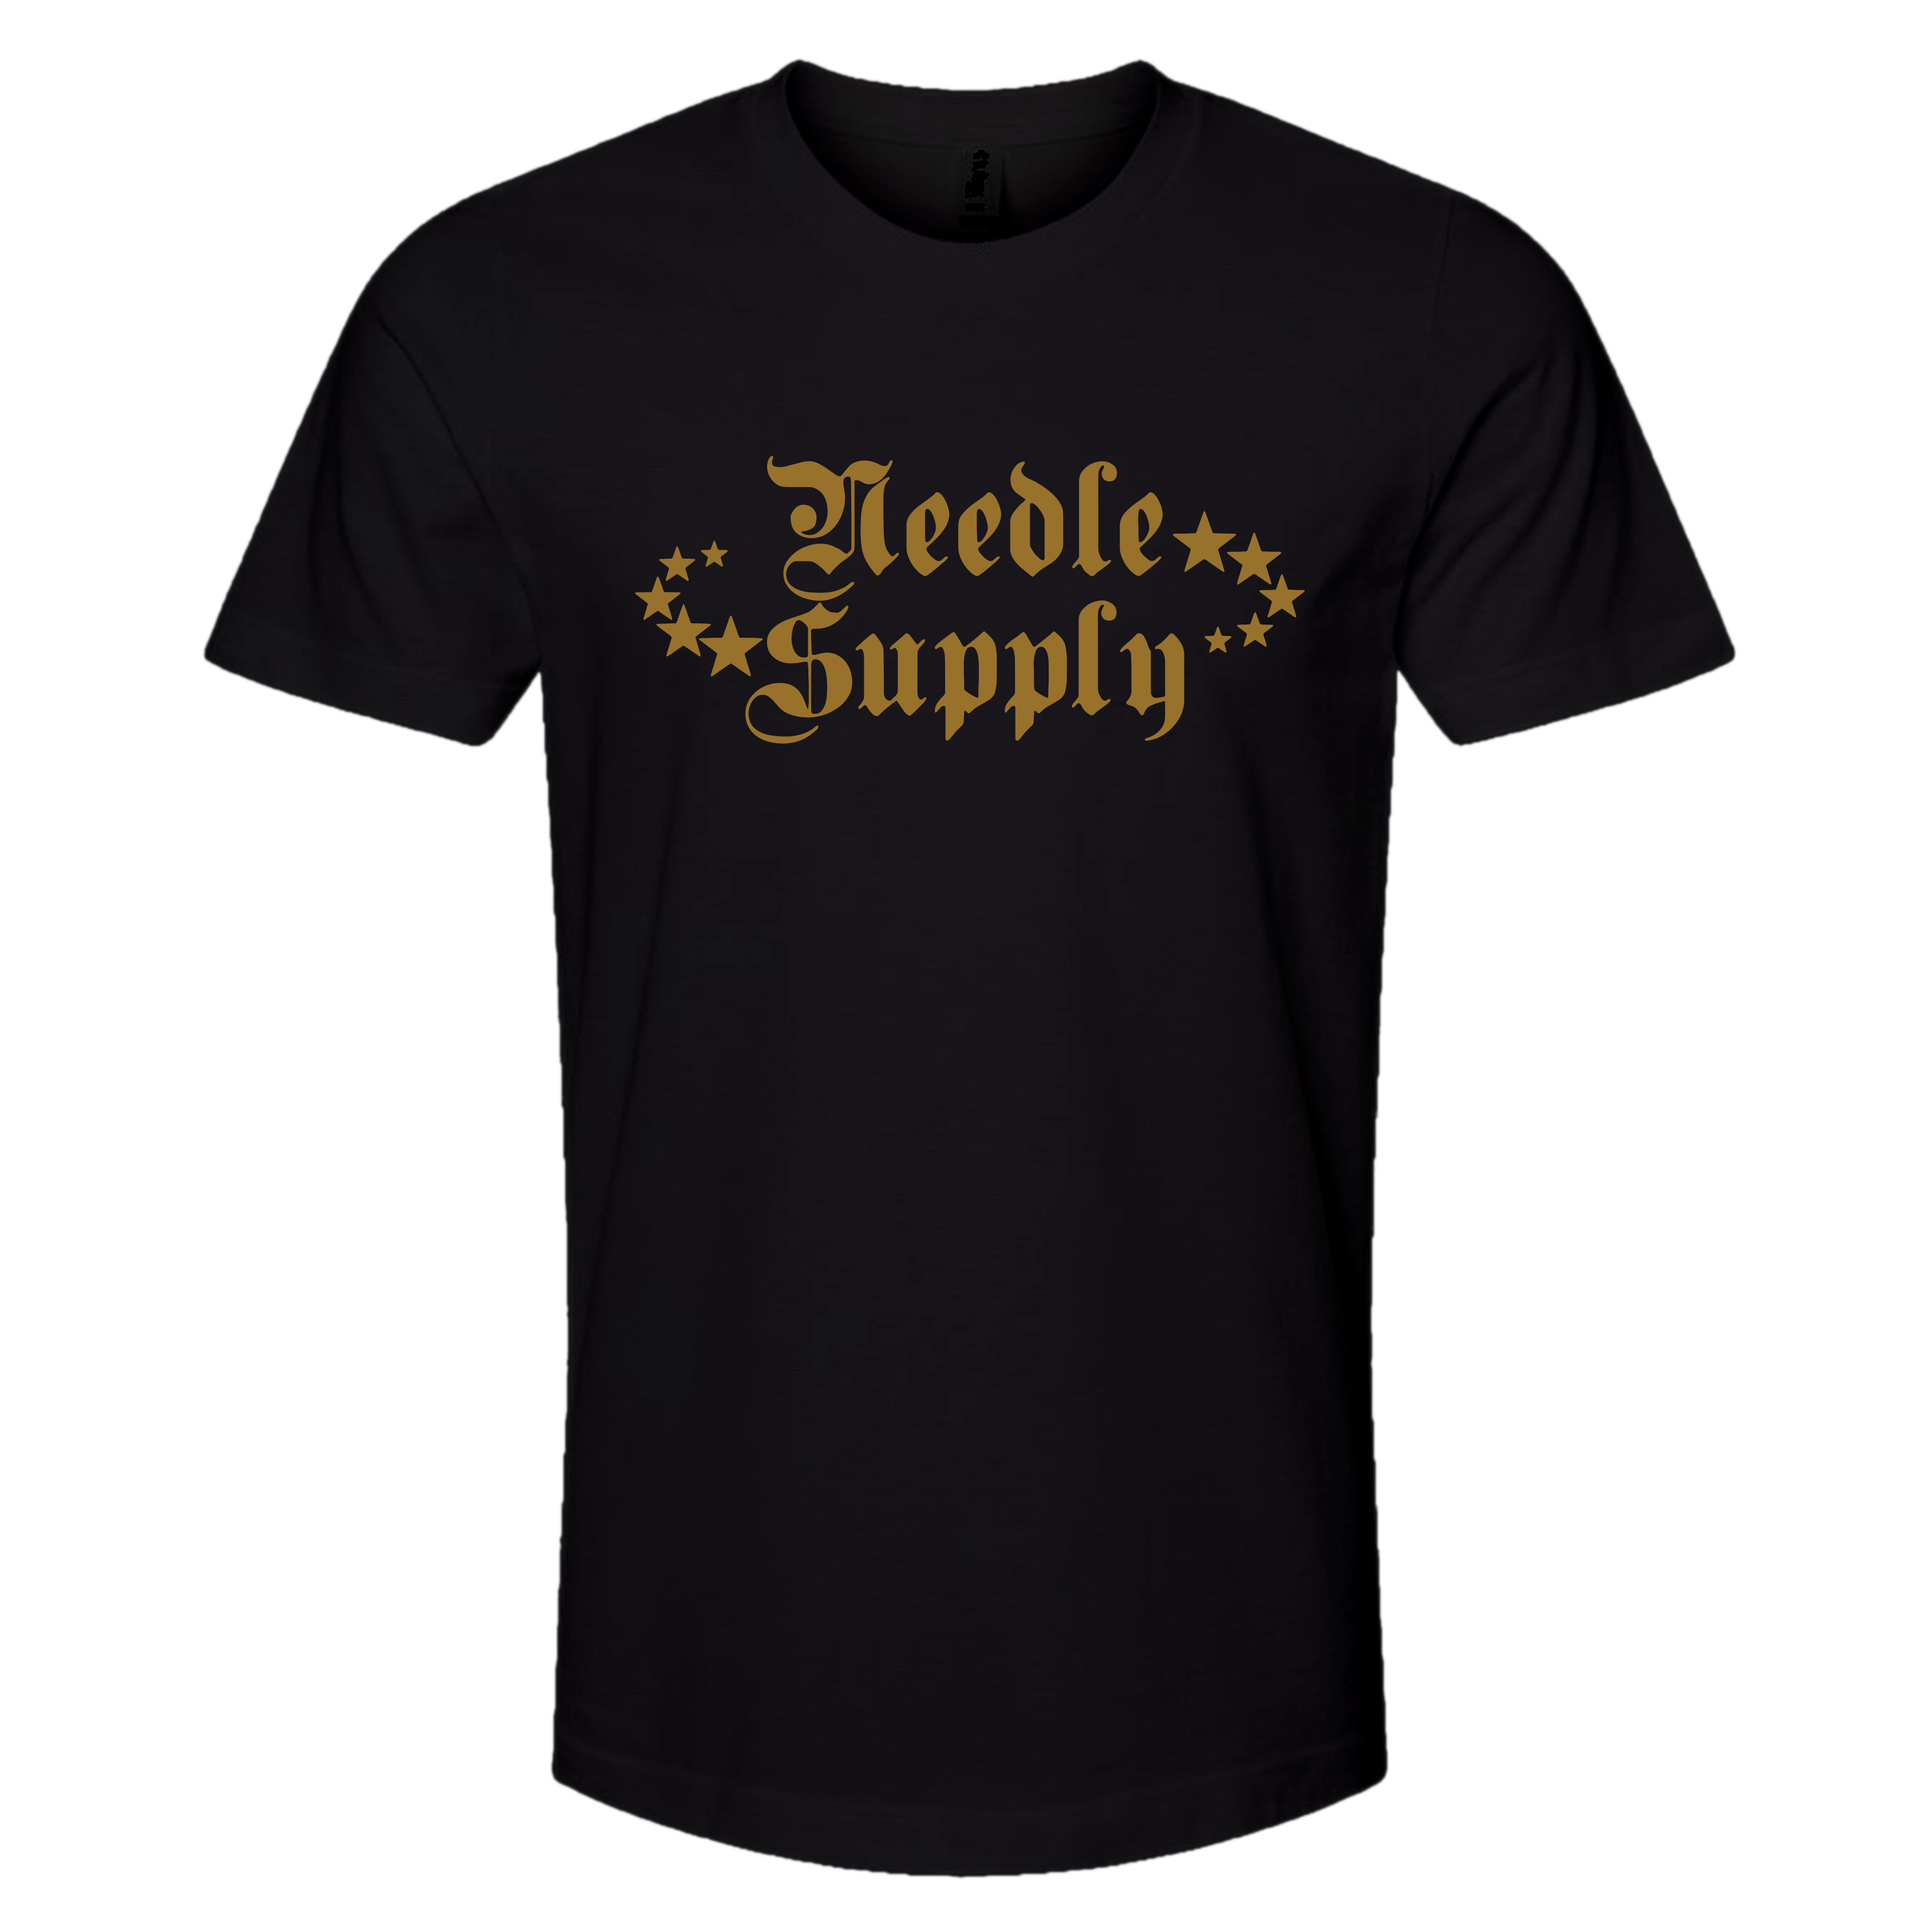 Needle Supply Logo Shirt - GOLD